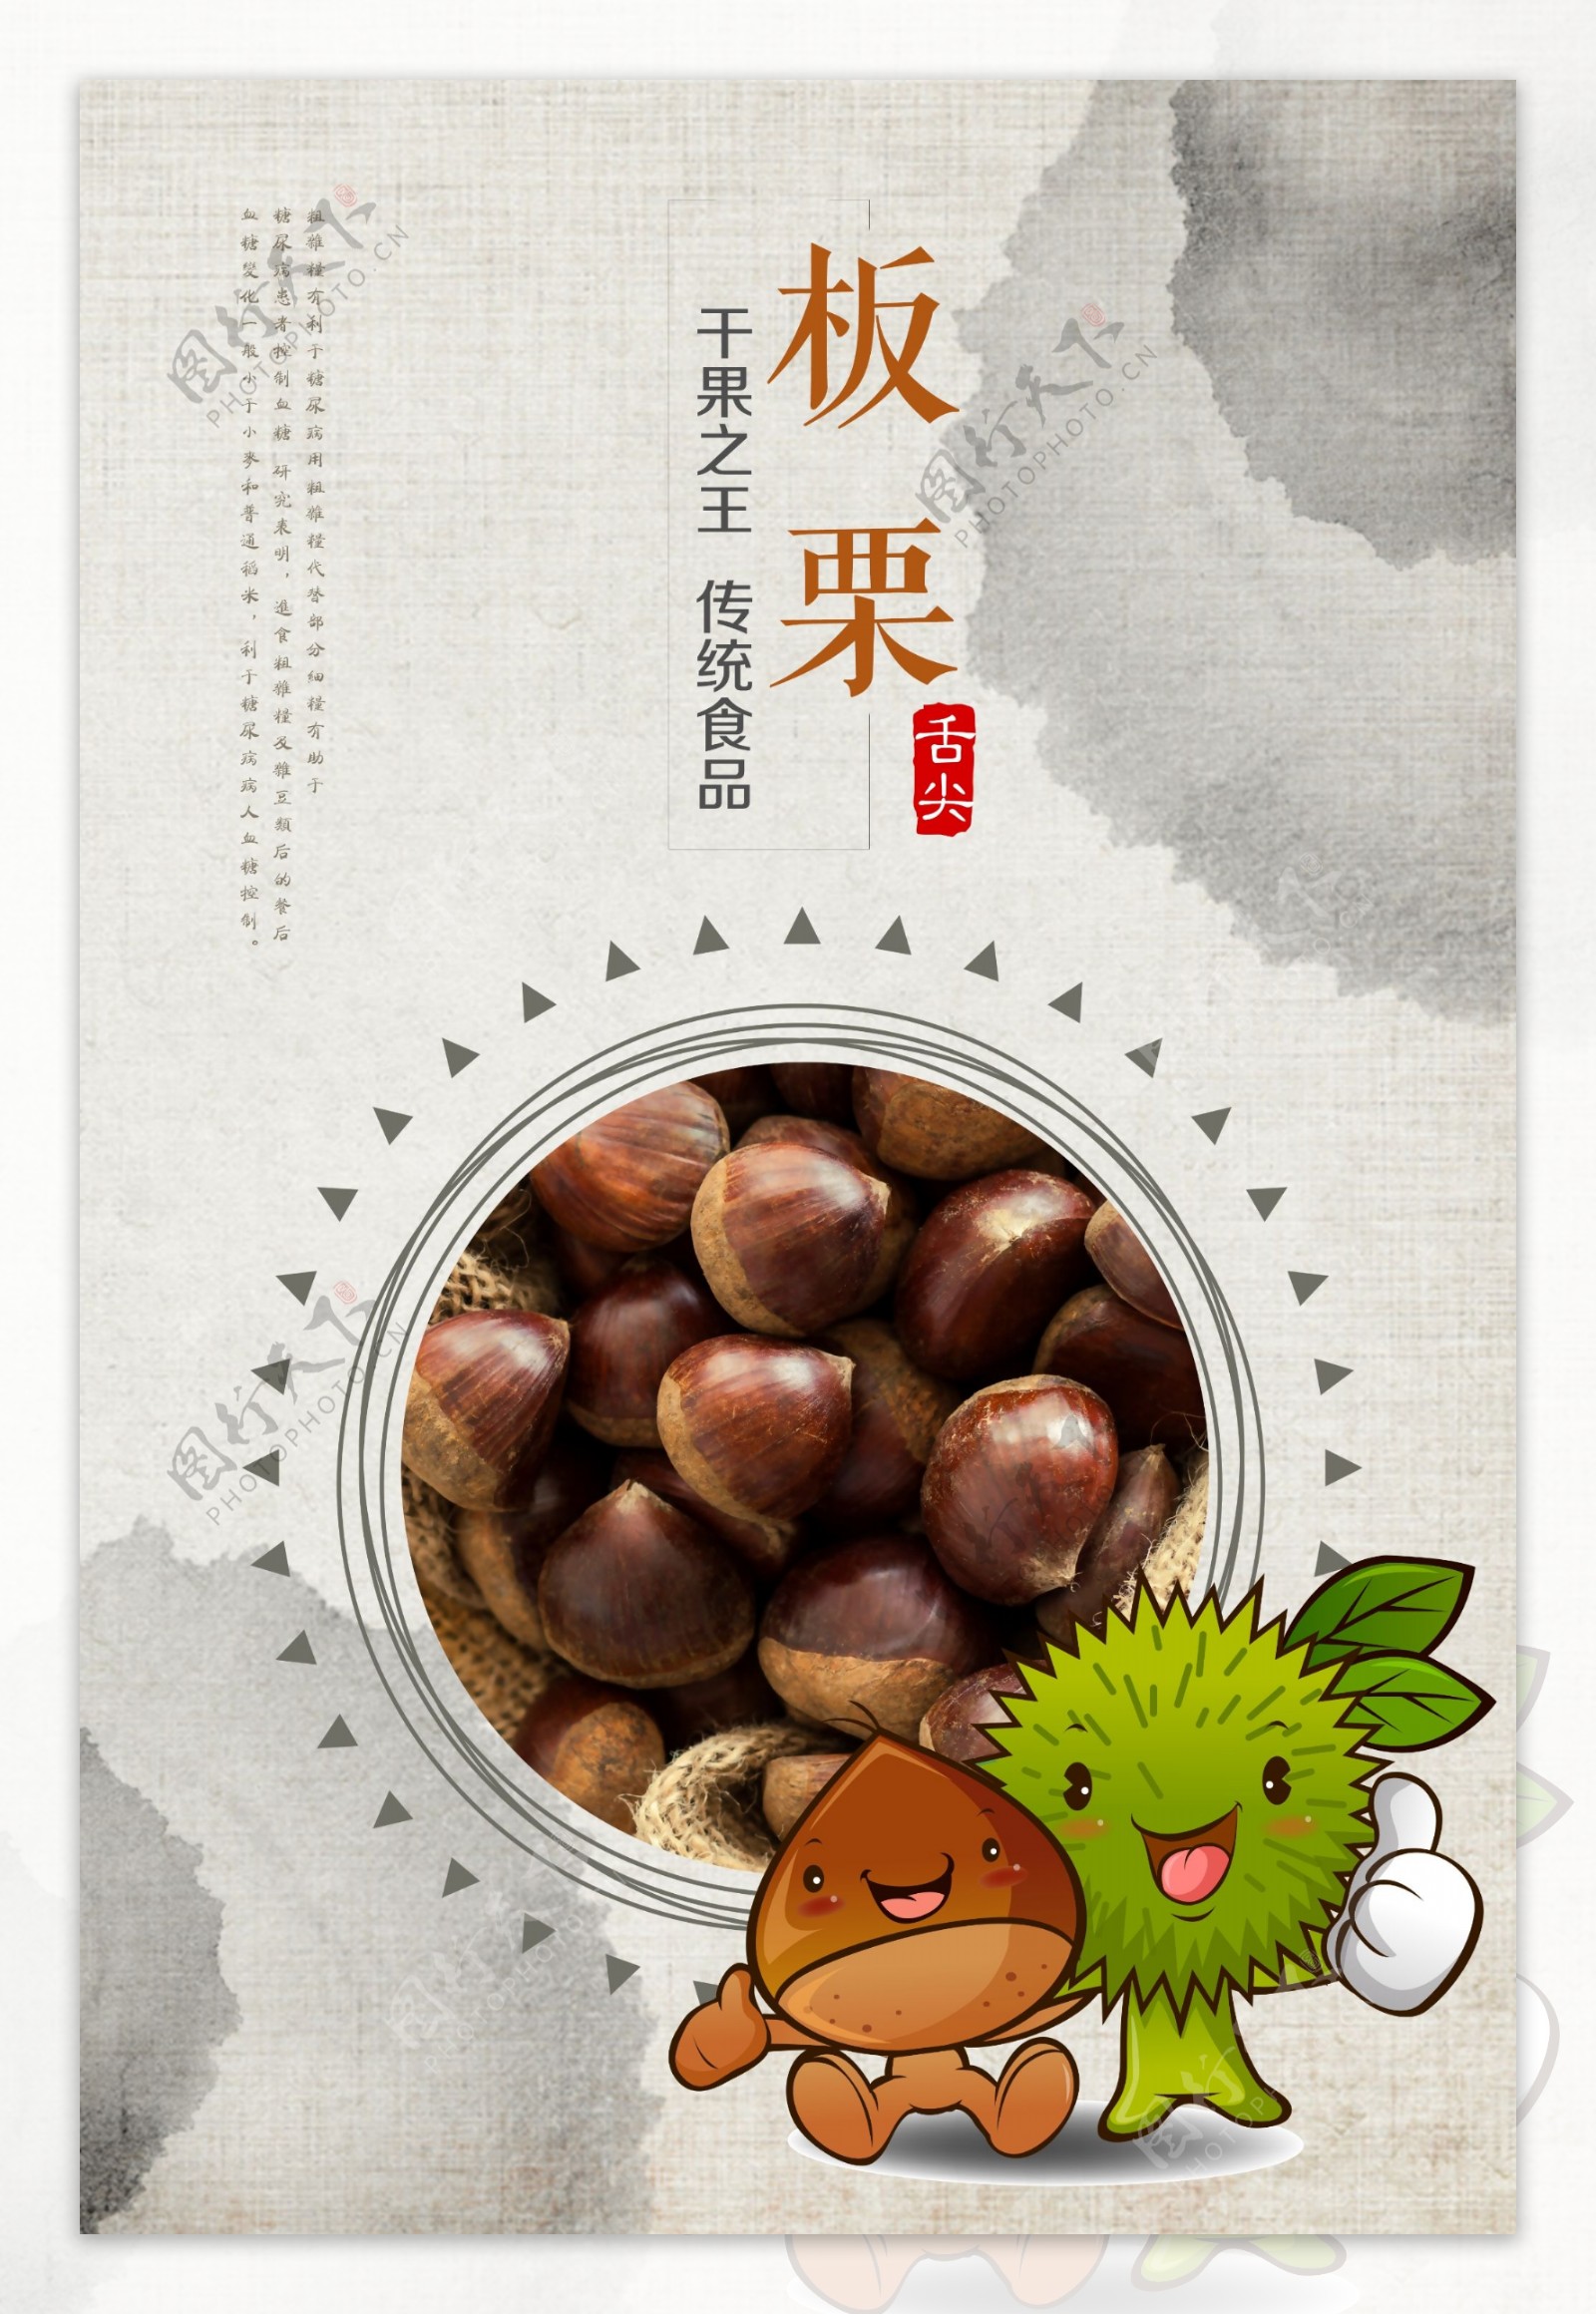 水墨中国风坚果板栗餐饮美食海报